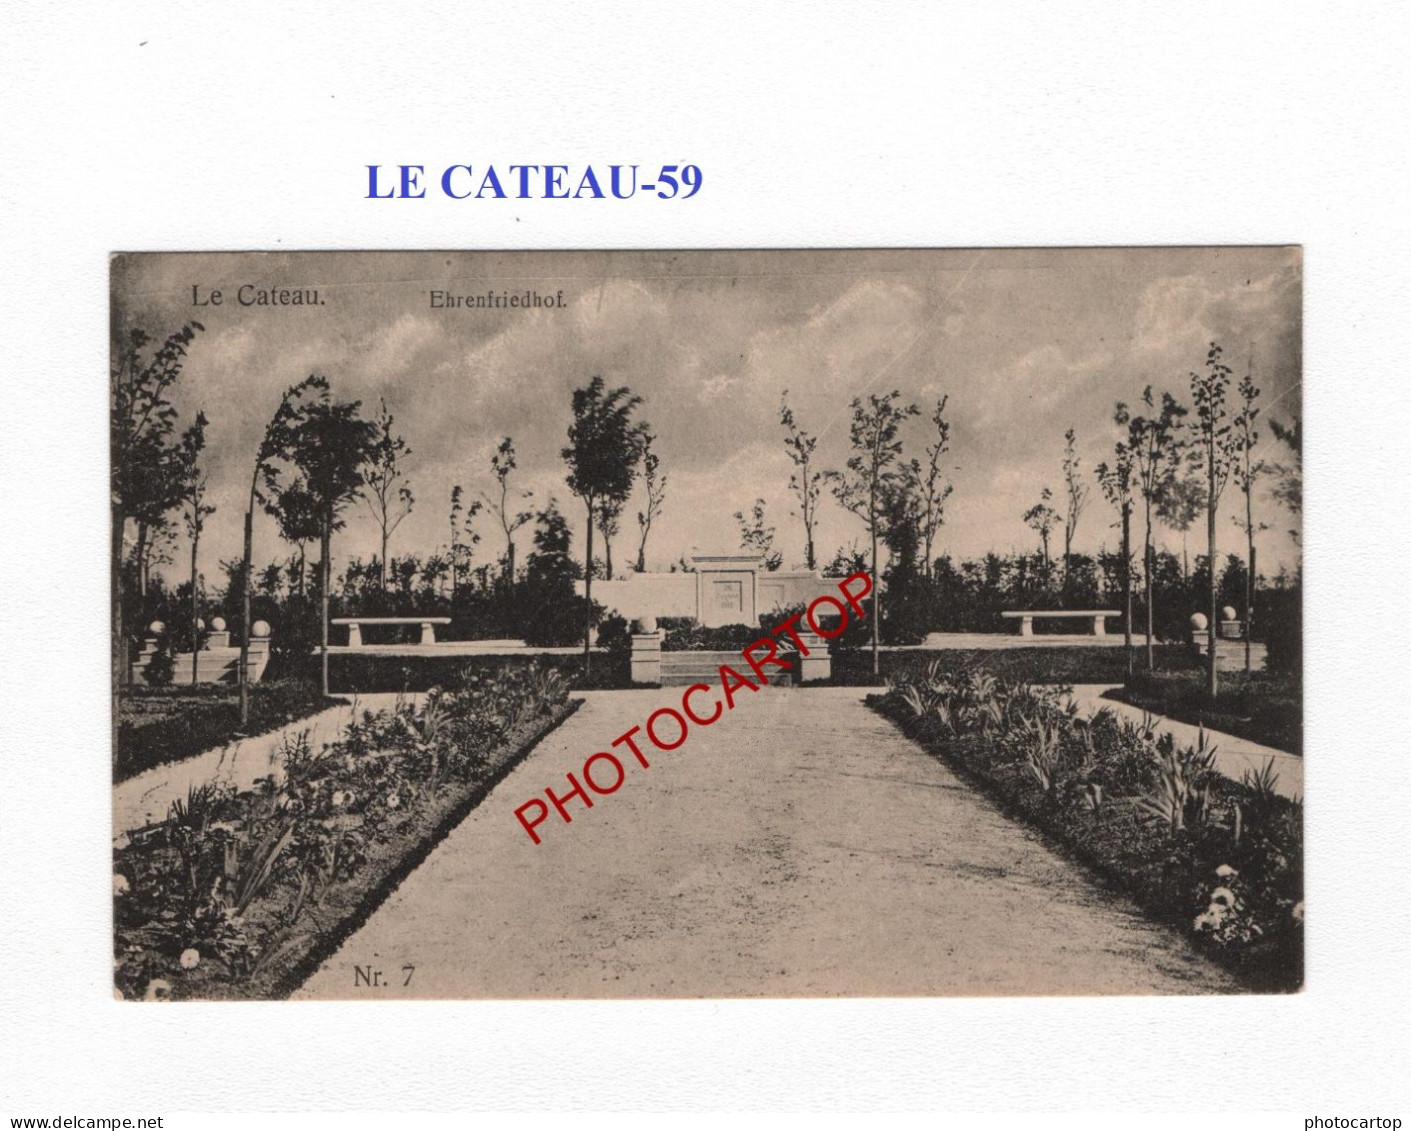 LE CATEAU-59-Tombes-Monument-Cimetiere-CARTE Imprimee Allemande-GUERRE 14-18-1 WK-MILITARIA- - War Cemeteries